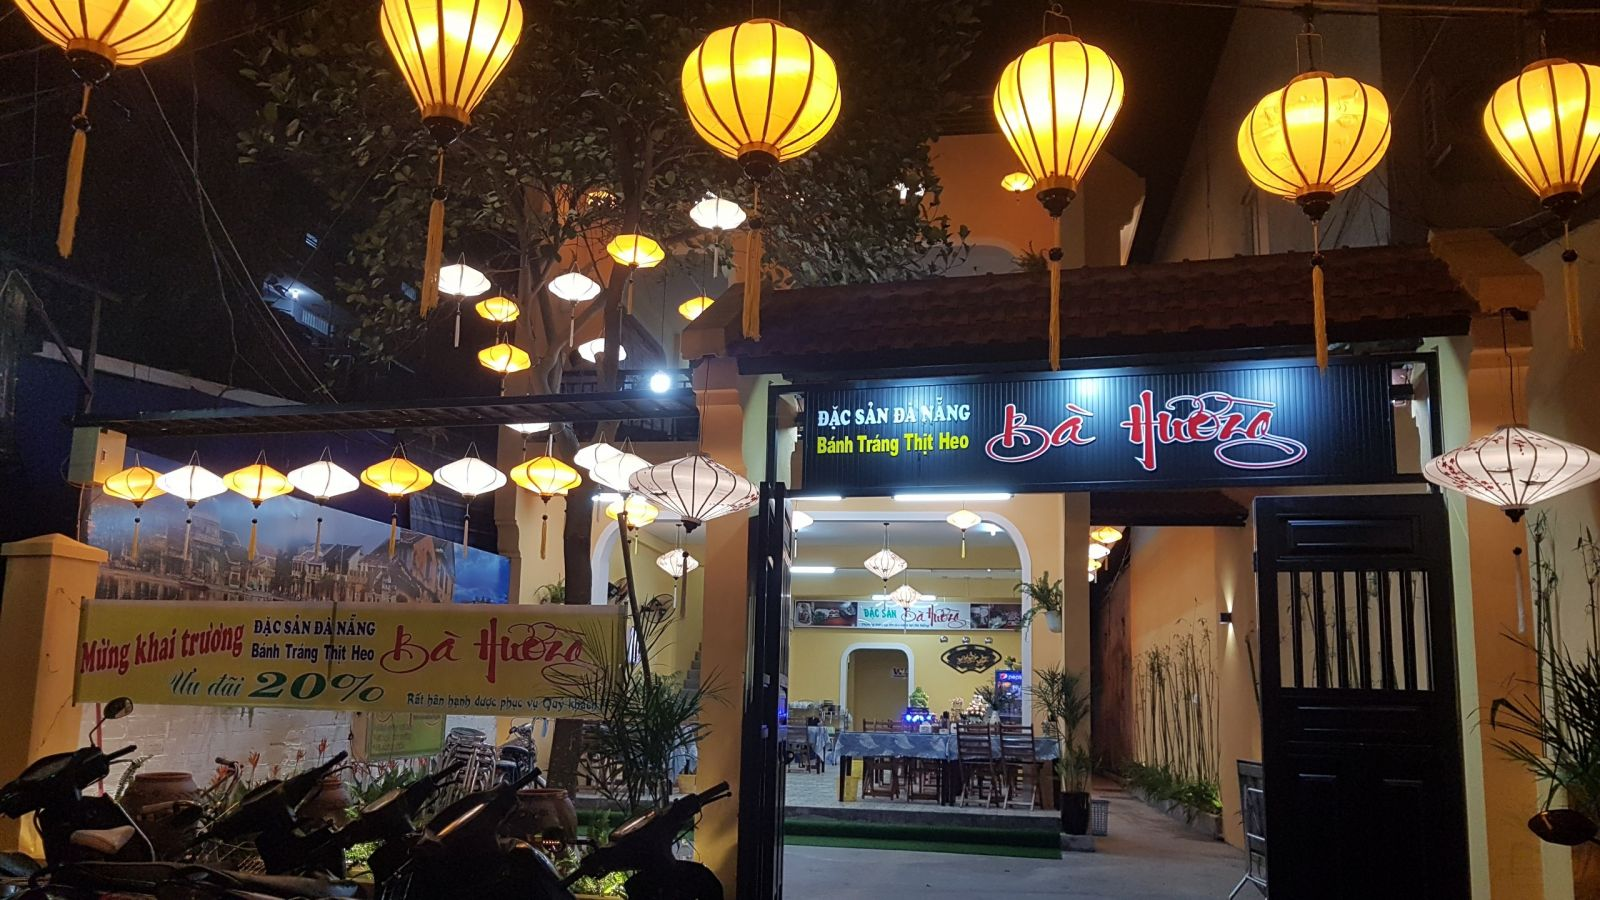 Quán Bà Hường - một địa điểm ăn uống nổi tiếng với món bánh tráng cuốn thịt heo Đà Nẵng thơm ngon chuẩn vị